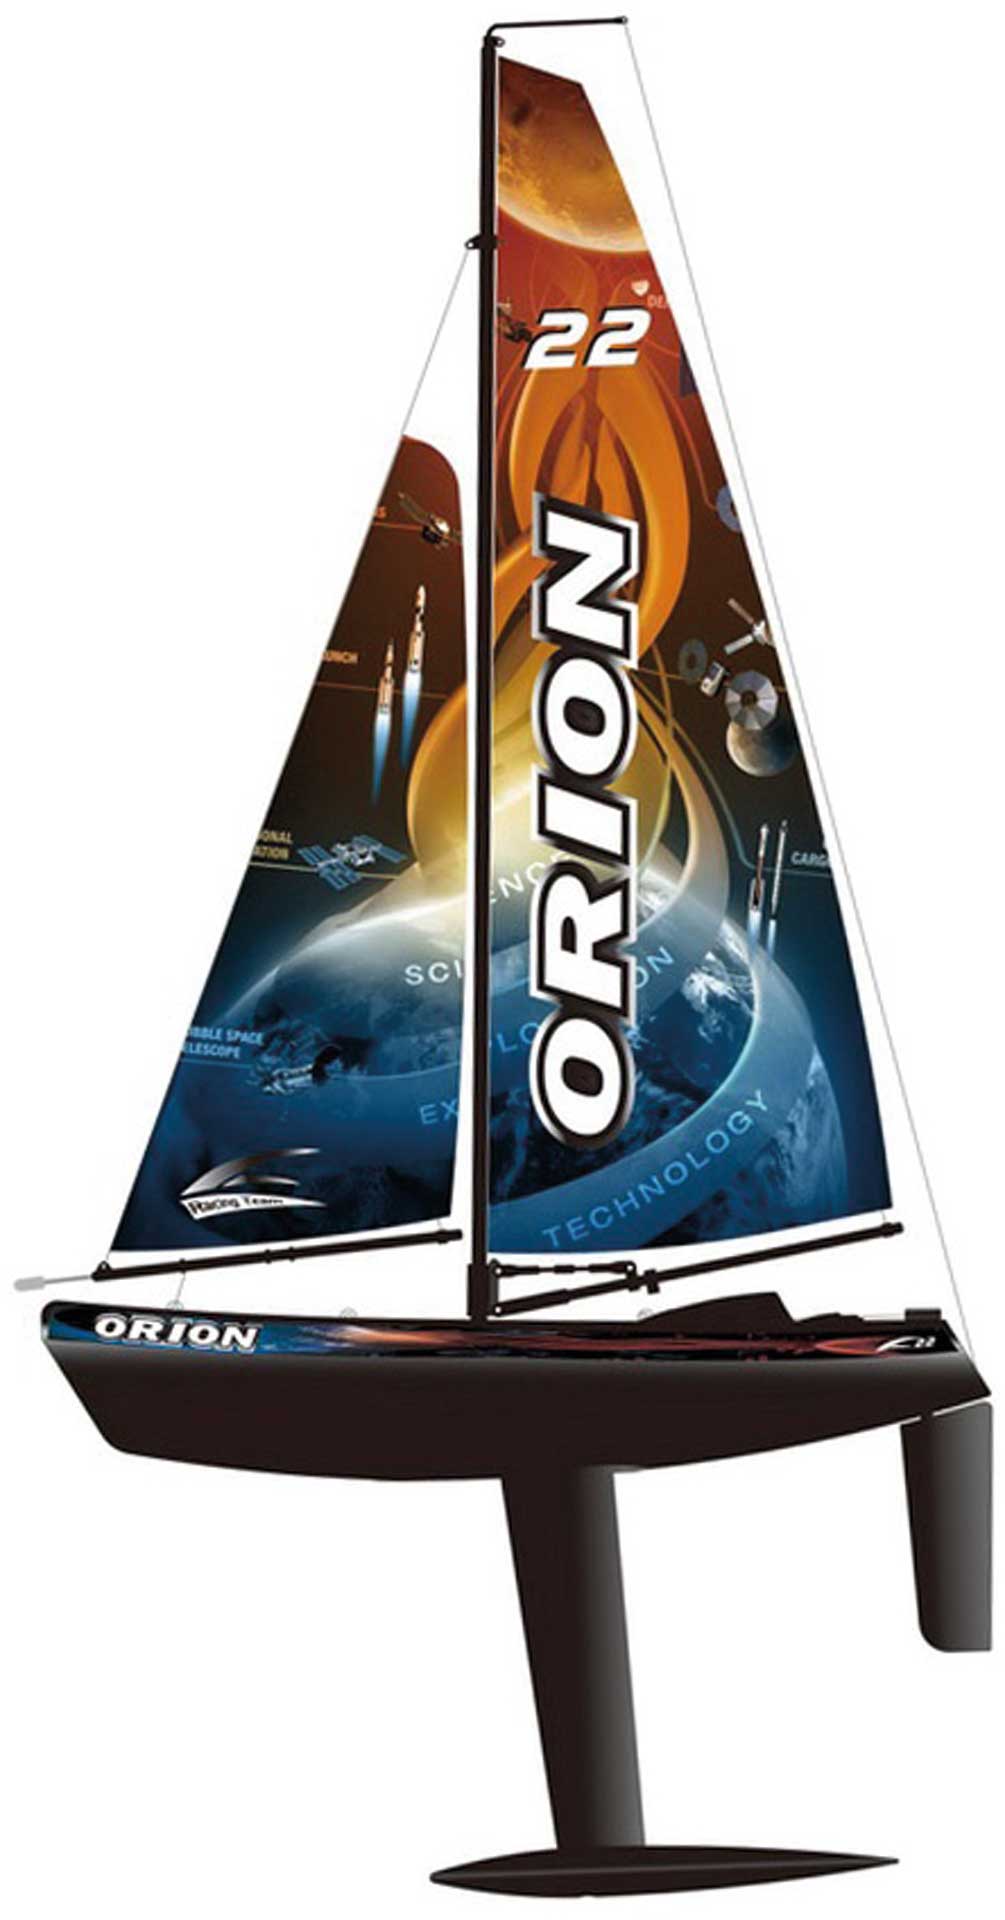 JOYSWAY Orion V2 Sailing Boat 2.4G RTR